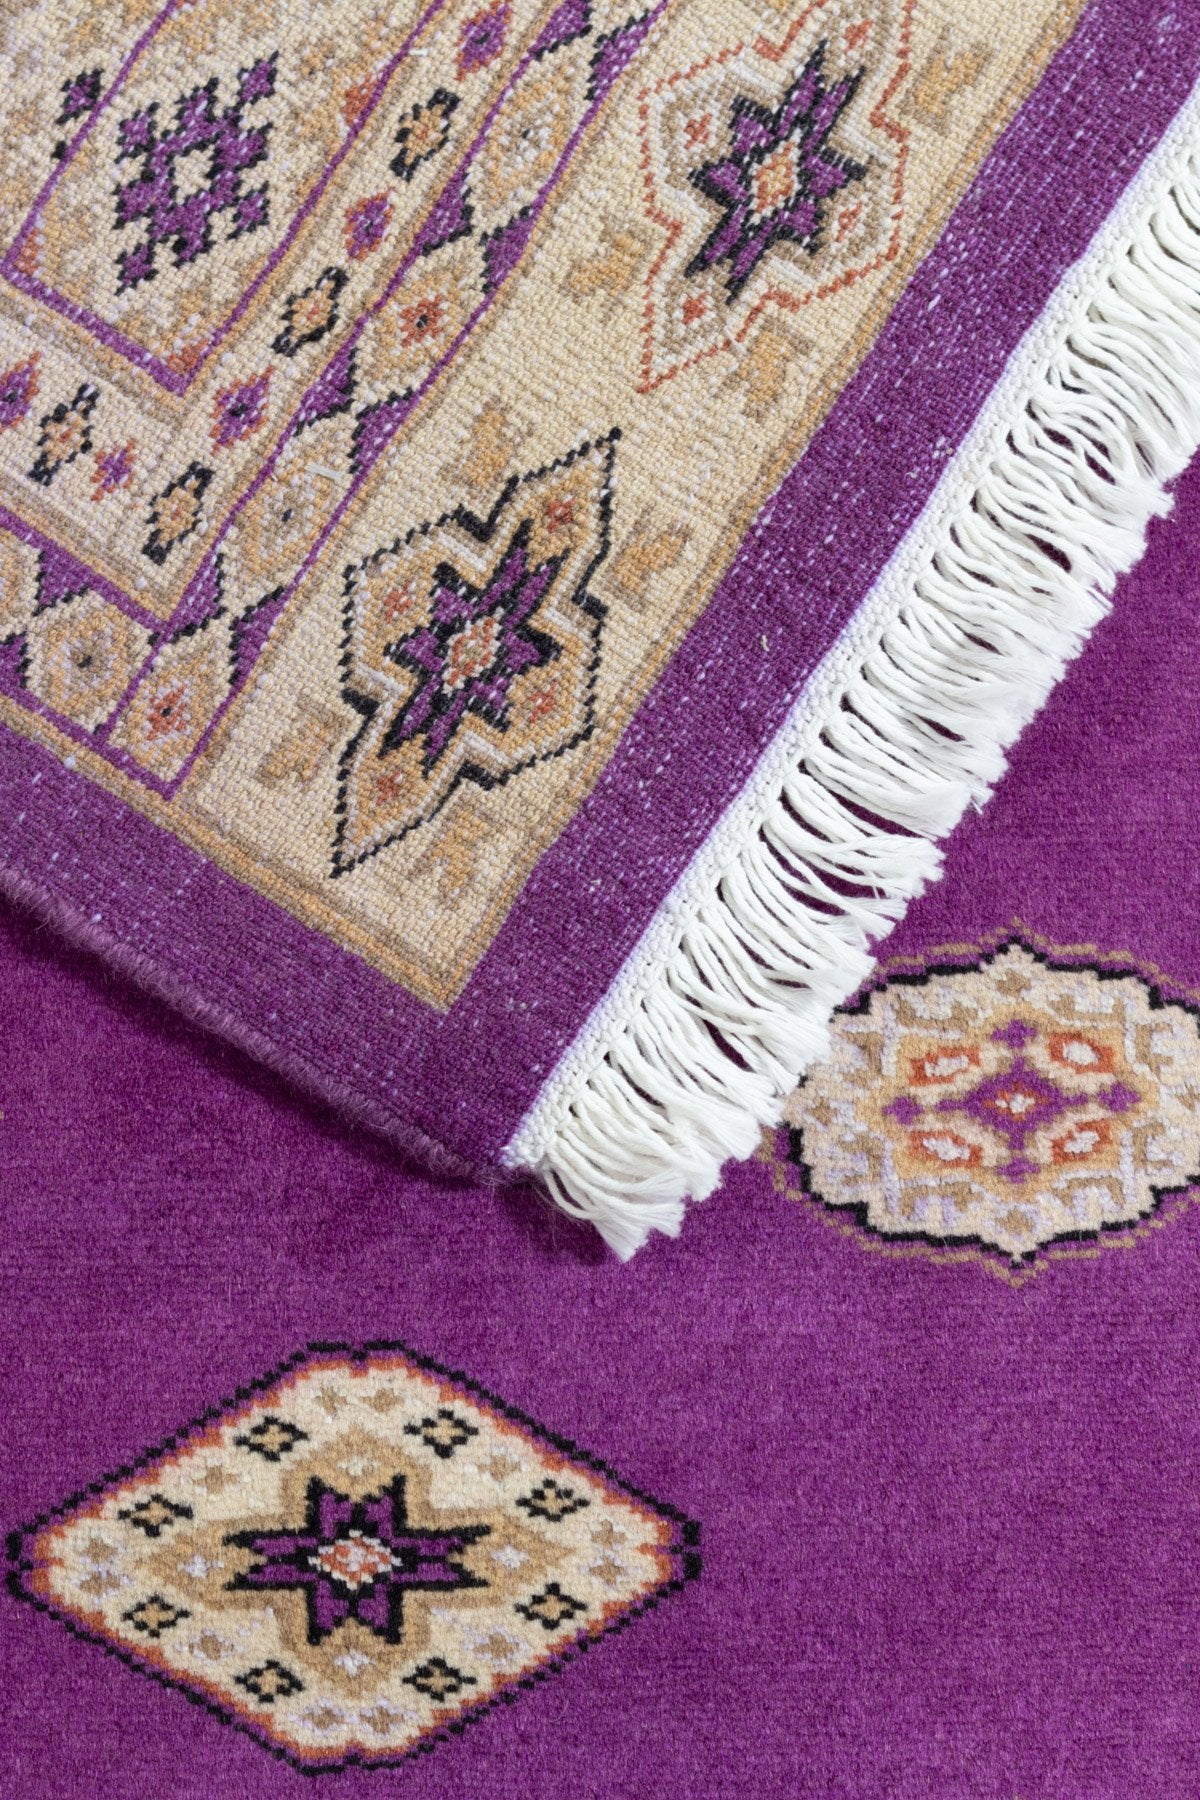 ペルシャ絨毯要素を取り入れたパキスタン絨毯